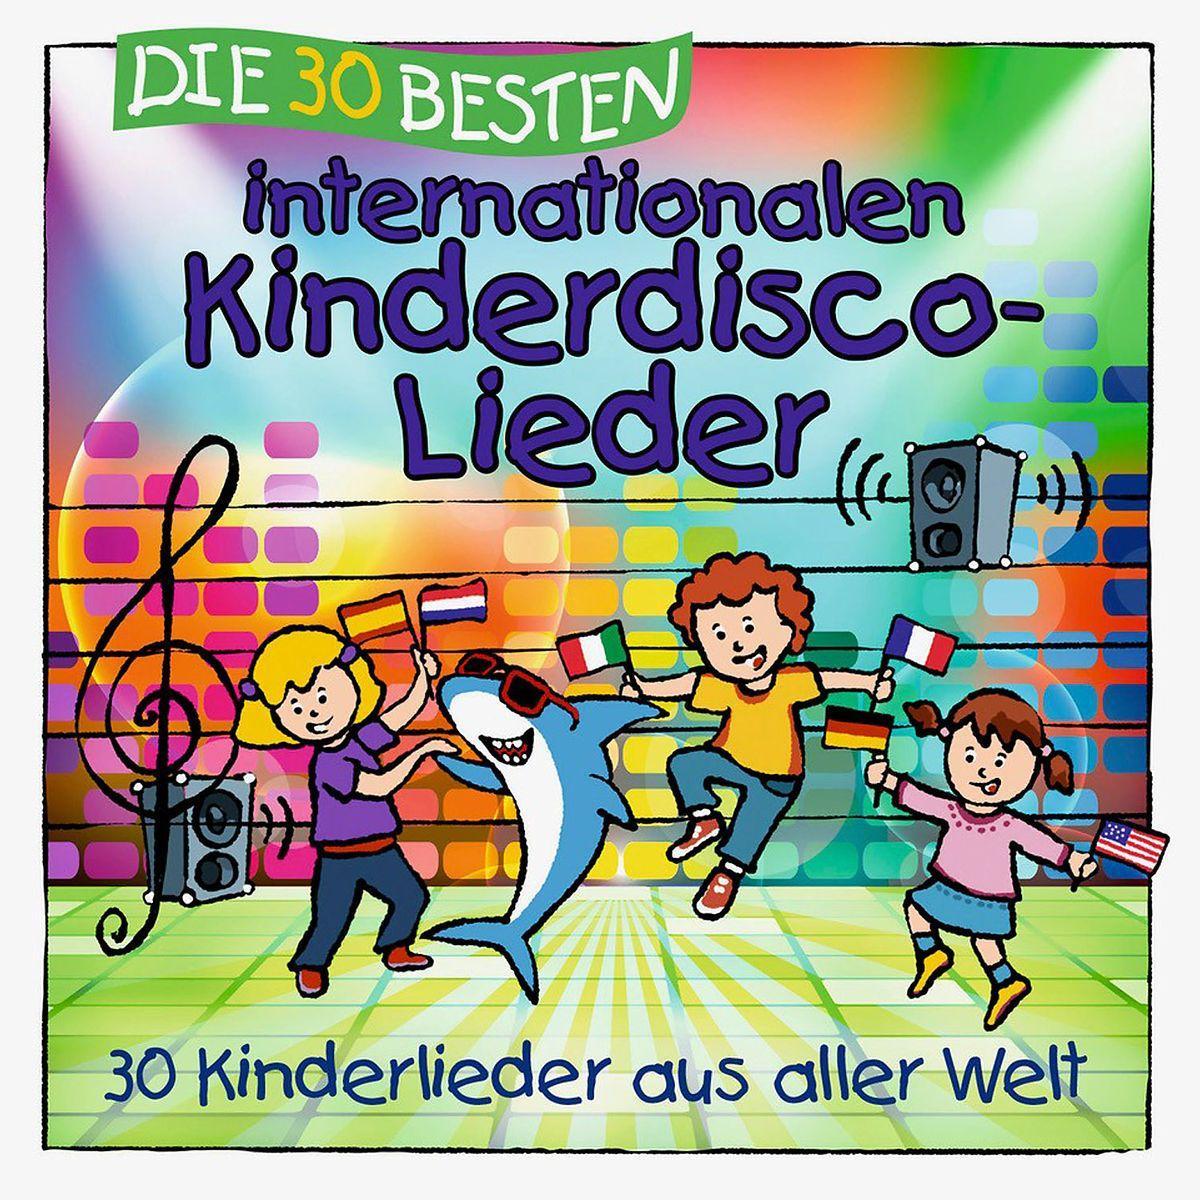 Audio Die 30 besten internationalen Kinderdisco-Lieder 